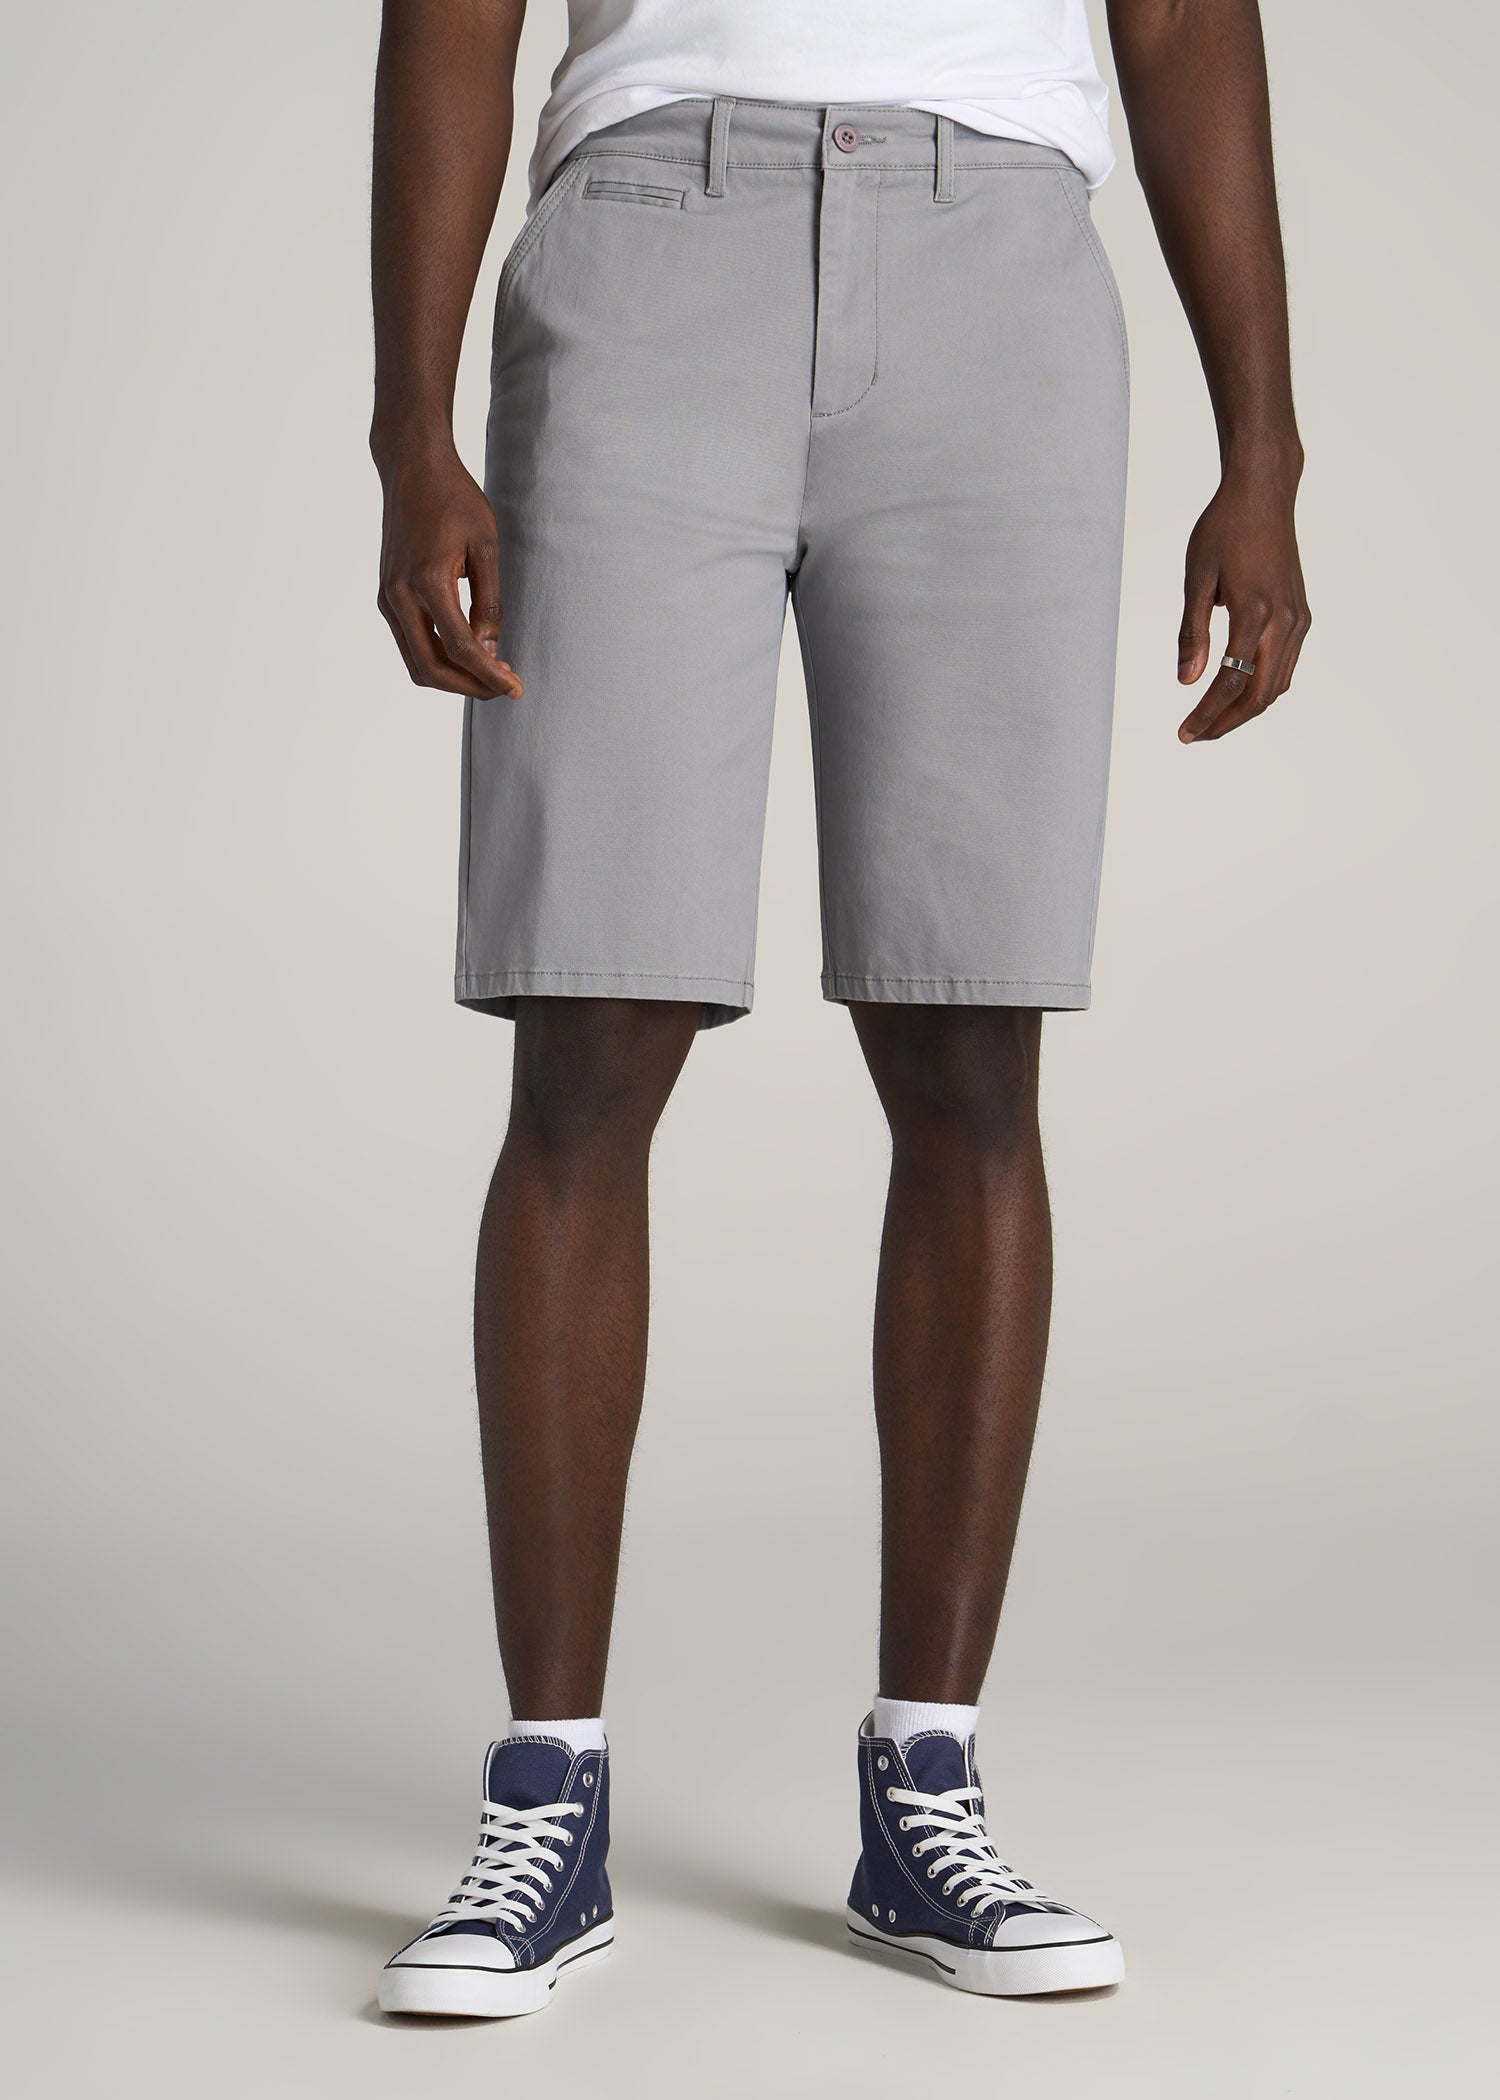 Buy the Mens Regular Fit Flat Front Slash Pockets Chino Shorts